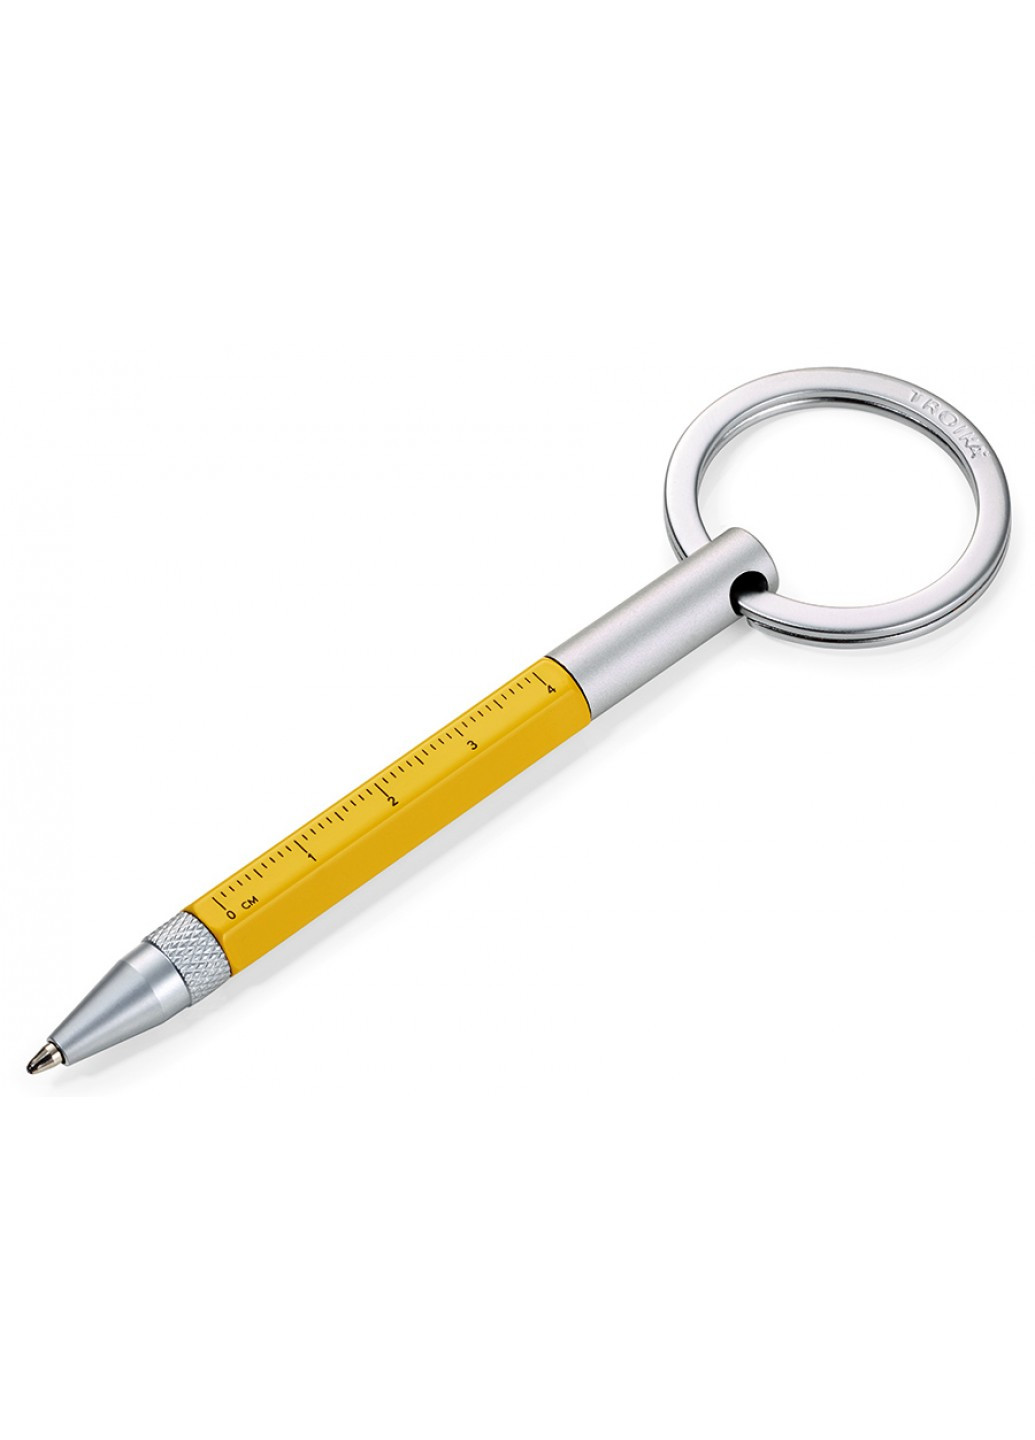 Ручка-брелок Micro Construction желтая, Troika kyp25/ye (208083217)